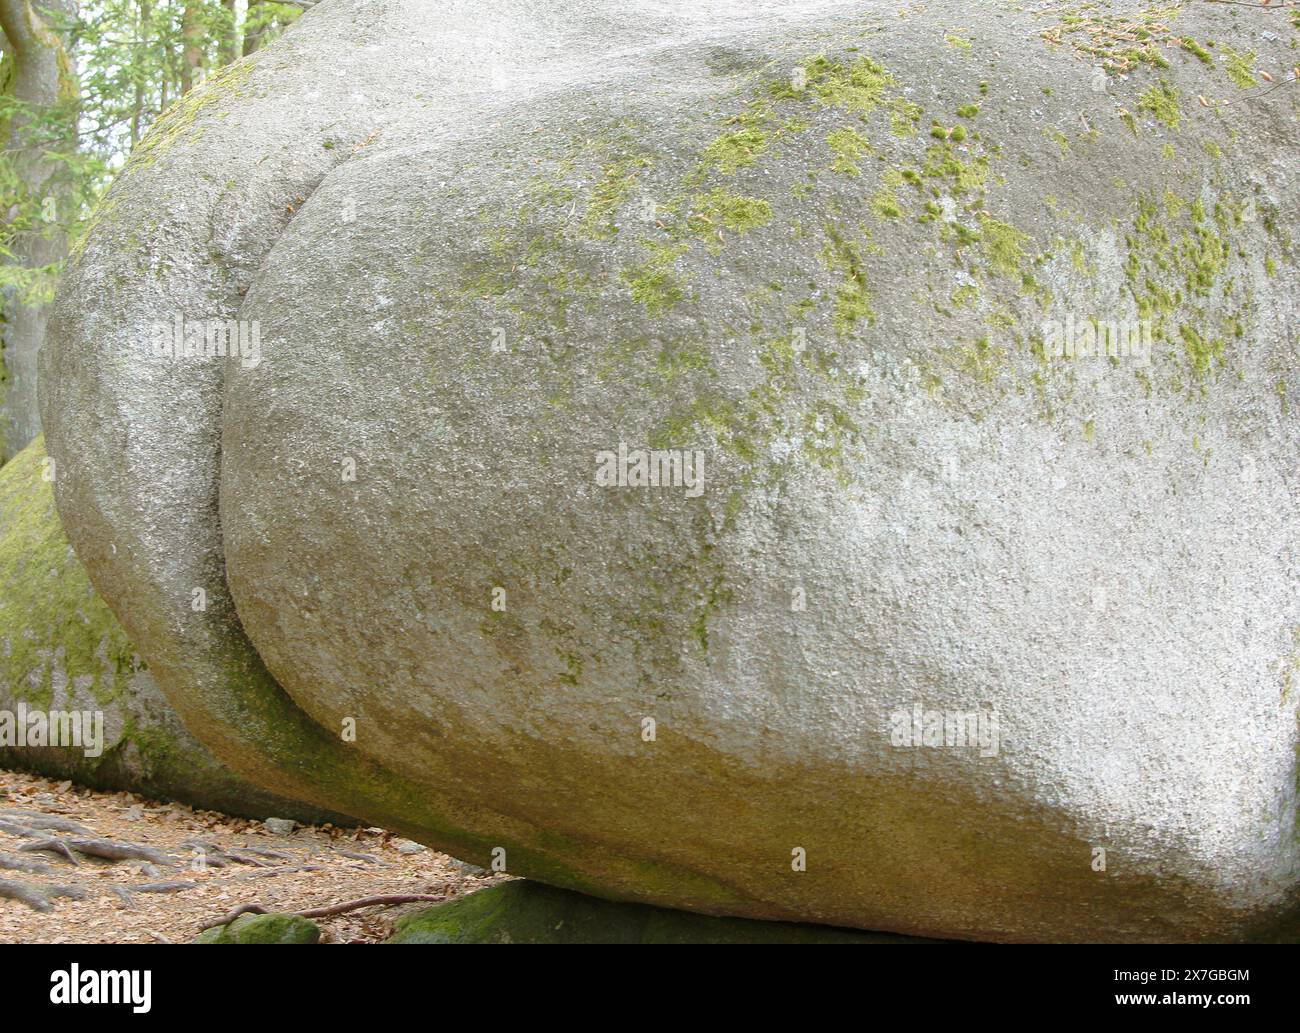 Der lustigste Felsbrocken in Tschechien - jeder Wanderer möchte ein Foto mit diesem einzigartigen Stück Granit machen. Stein, Stein kann einfach keinen anderen haben Stockfoto